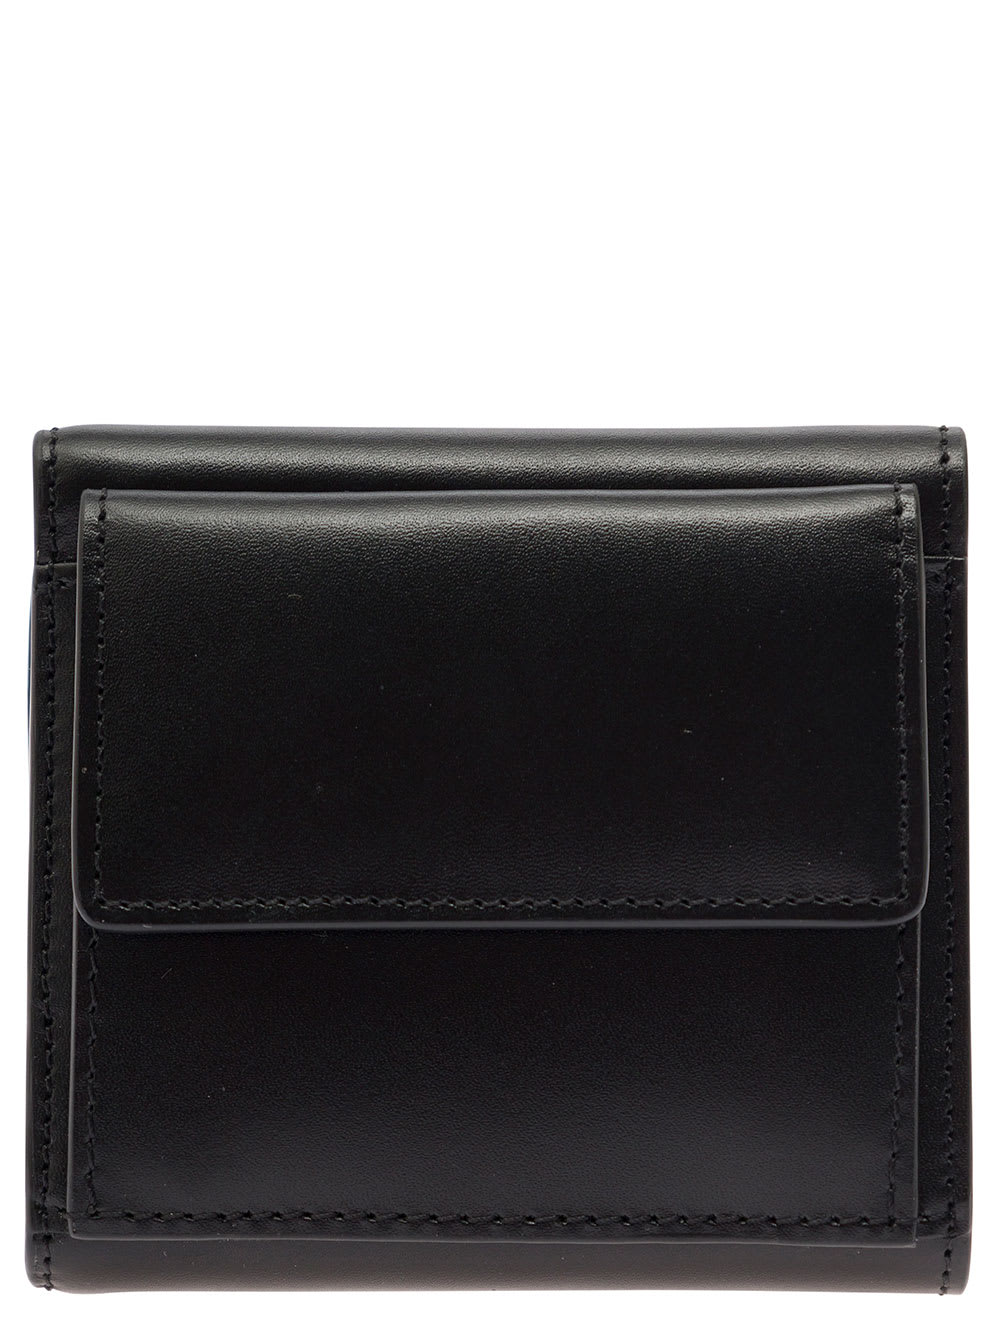 Shop Apc Logo Wallet In Black